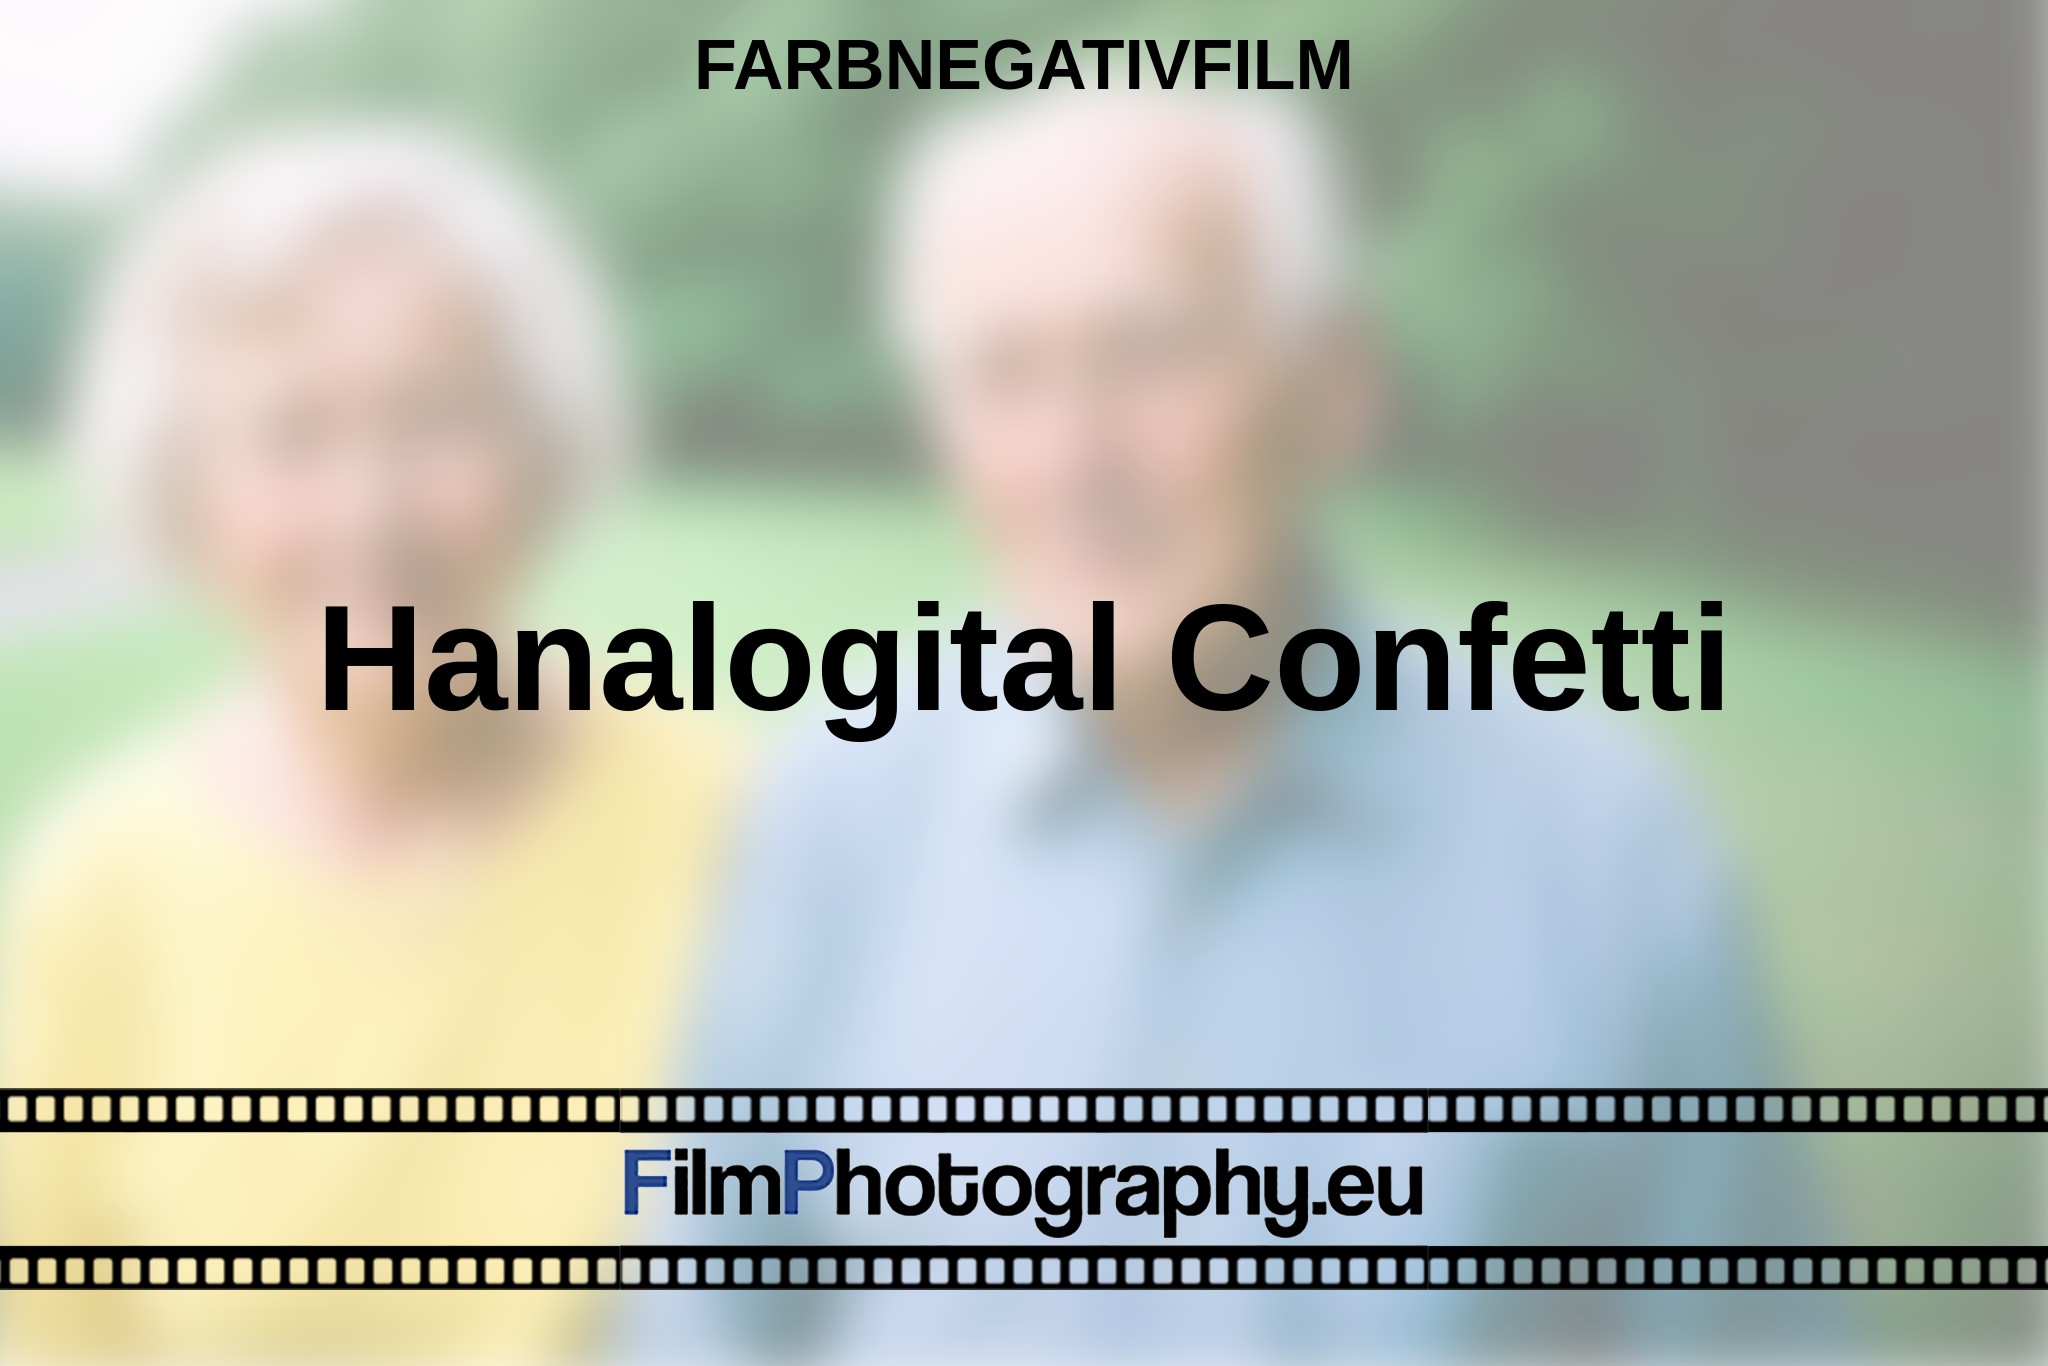 hanalogital-confetti-farbnegativfilm-bnv.jpg